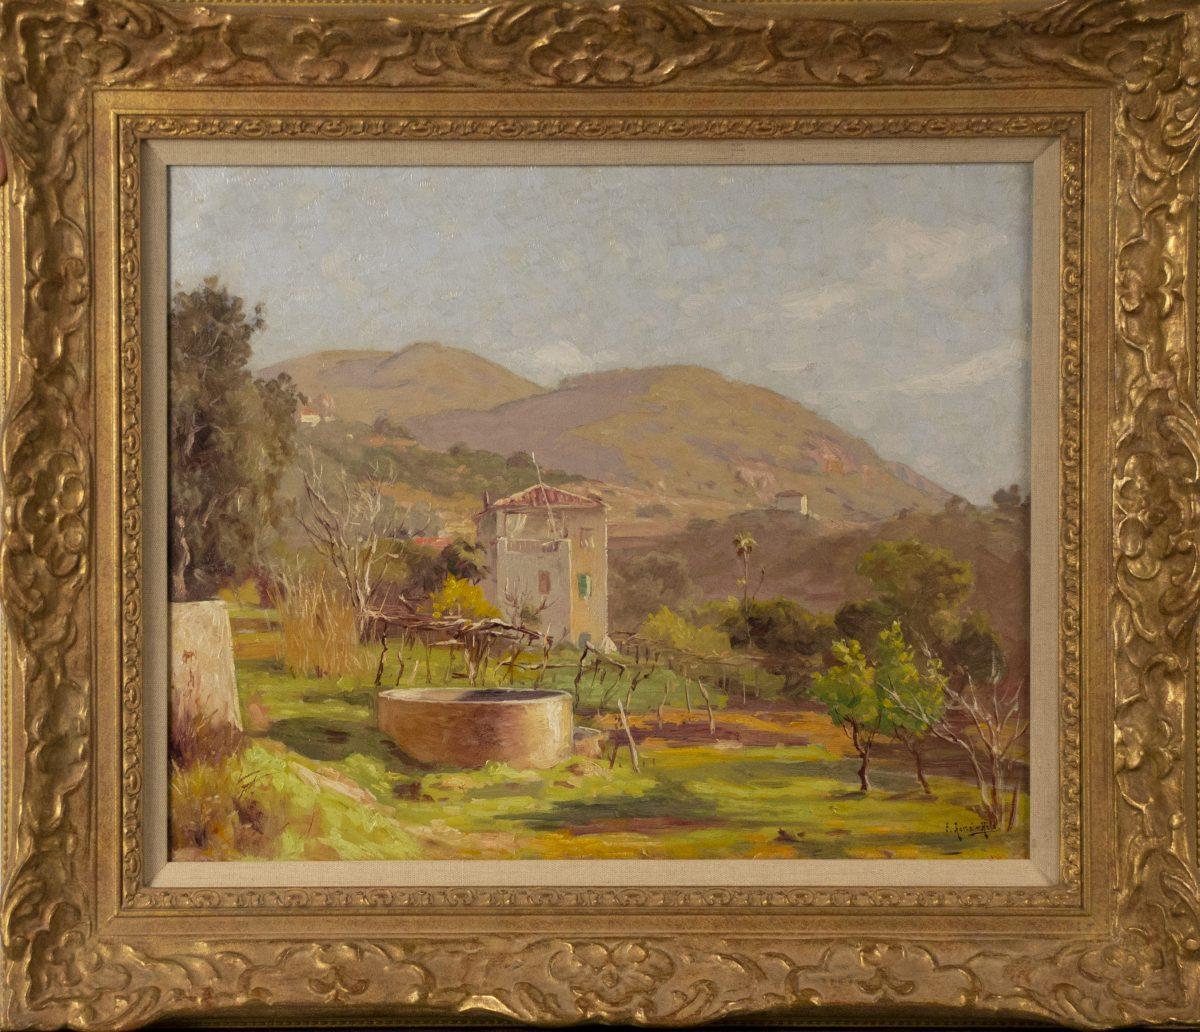 René Charles Edmond His Landscape Painting - Mountain Landscape, Col de Villefranche, South of France